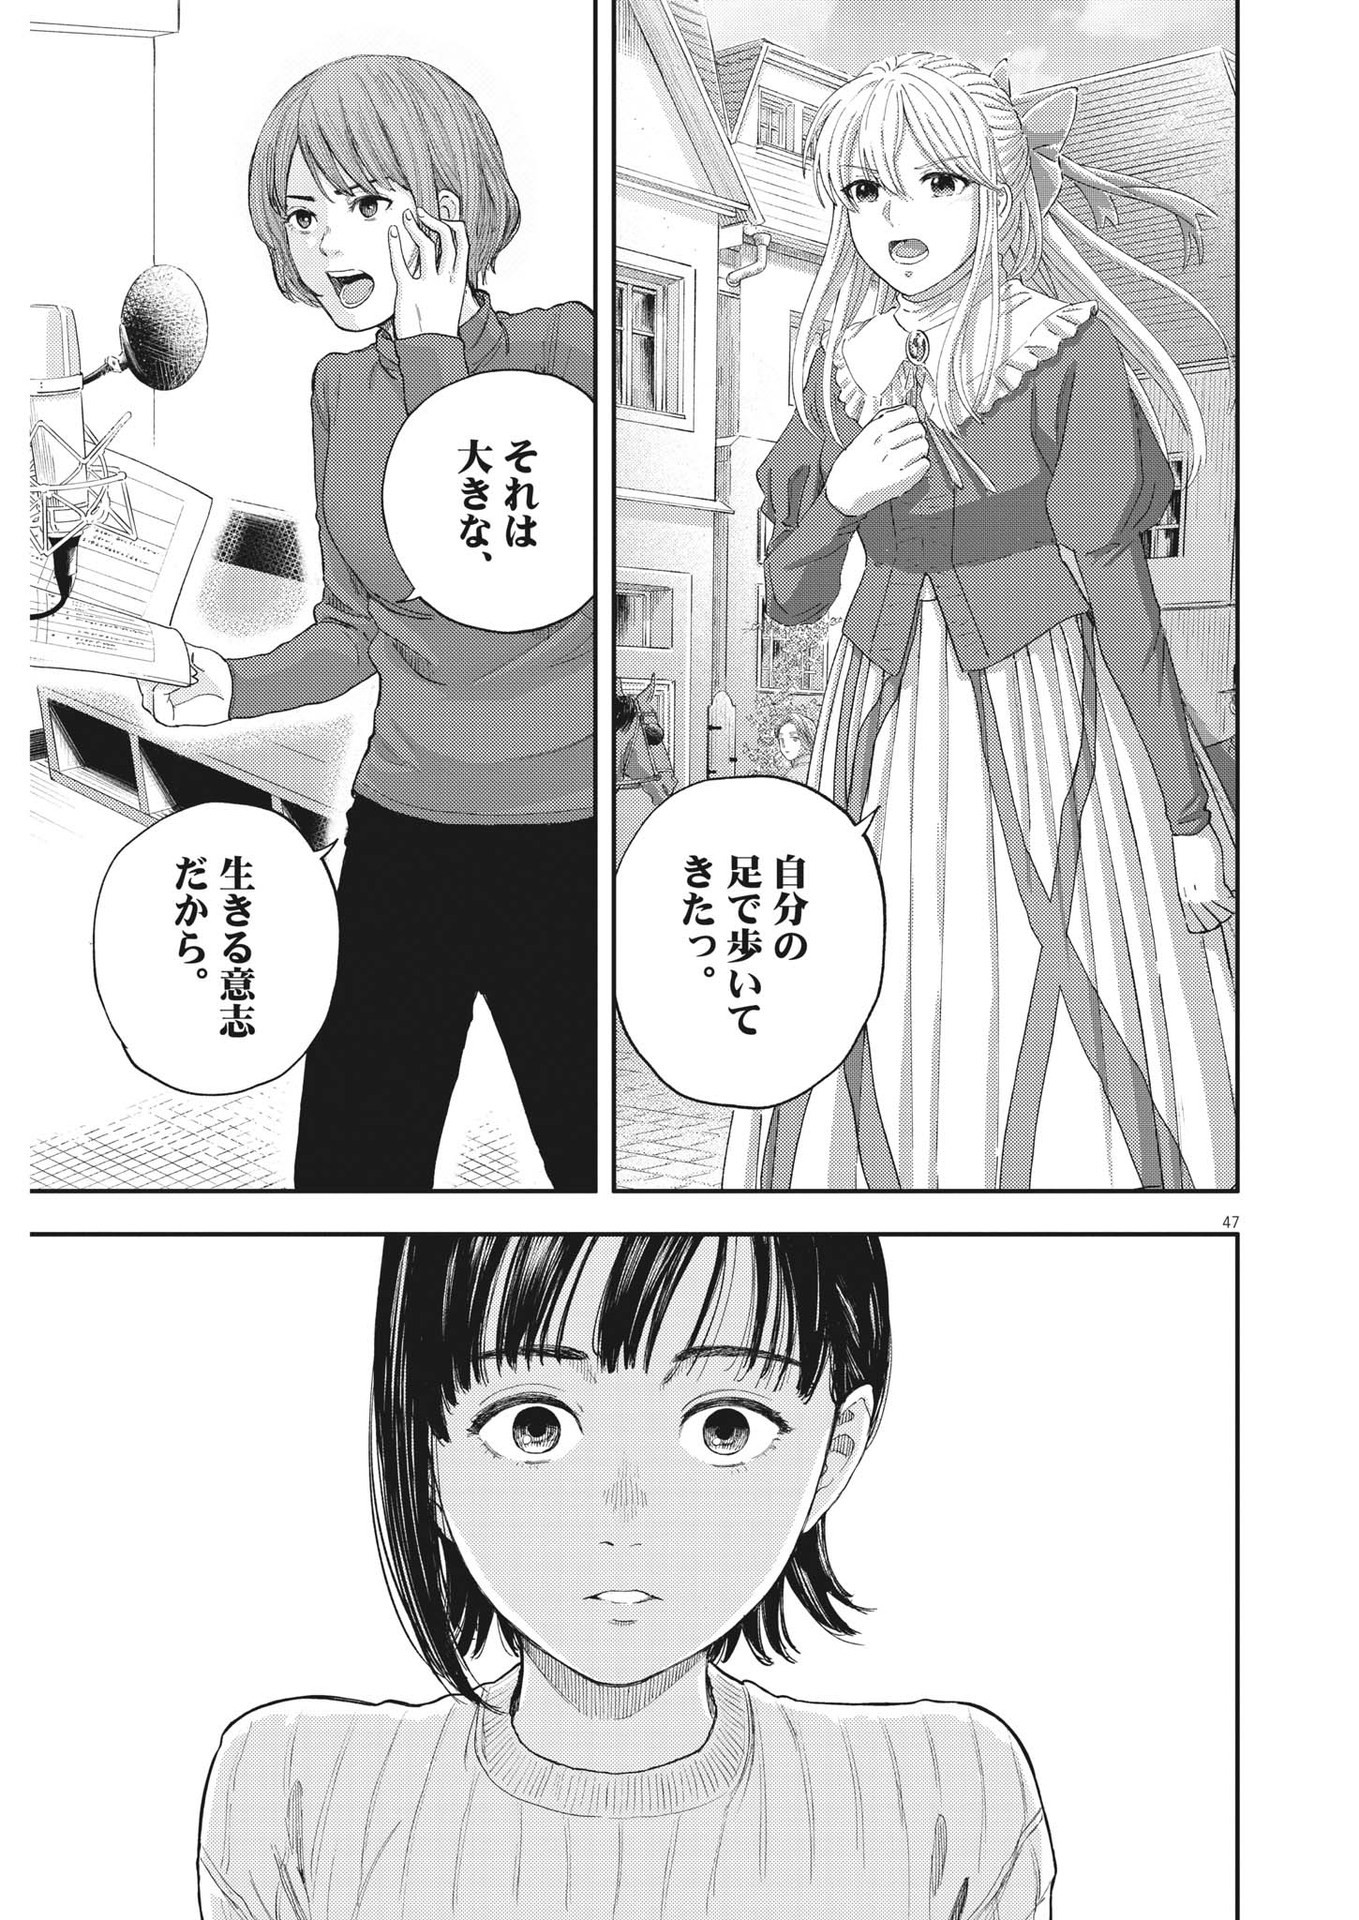 Yumenashi-sensei no Shinroshidou - Chapter 1 - Page 47